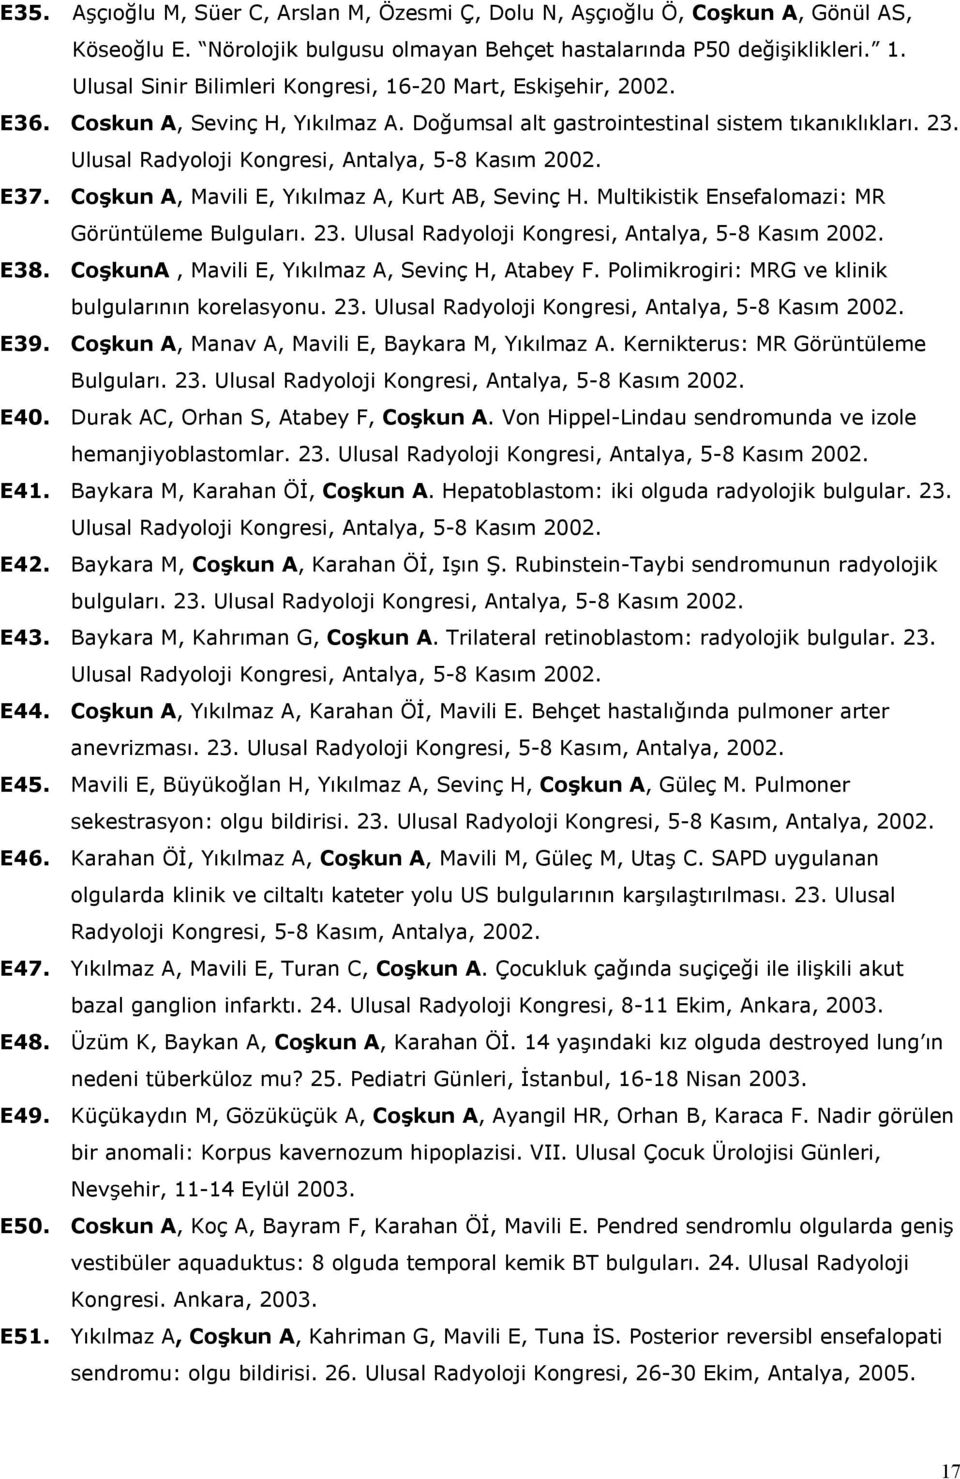 Ulusal Radyoloji Kongresi, Antalya, 5-8 Kasım 2002. E37. Coşkun A, Mavili E, Yıkılmaz A, Kurt AB, Sevinç H. Multikistik Ensefalomazi: MR Görüntüleme Bulguları. 23.